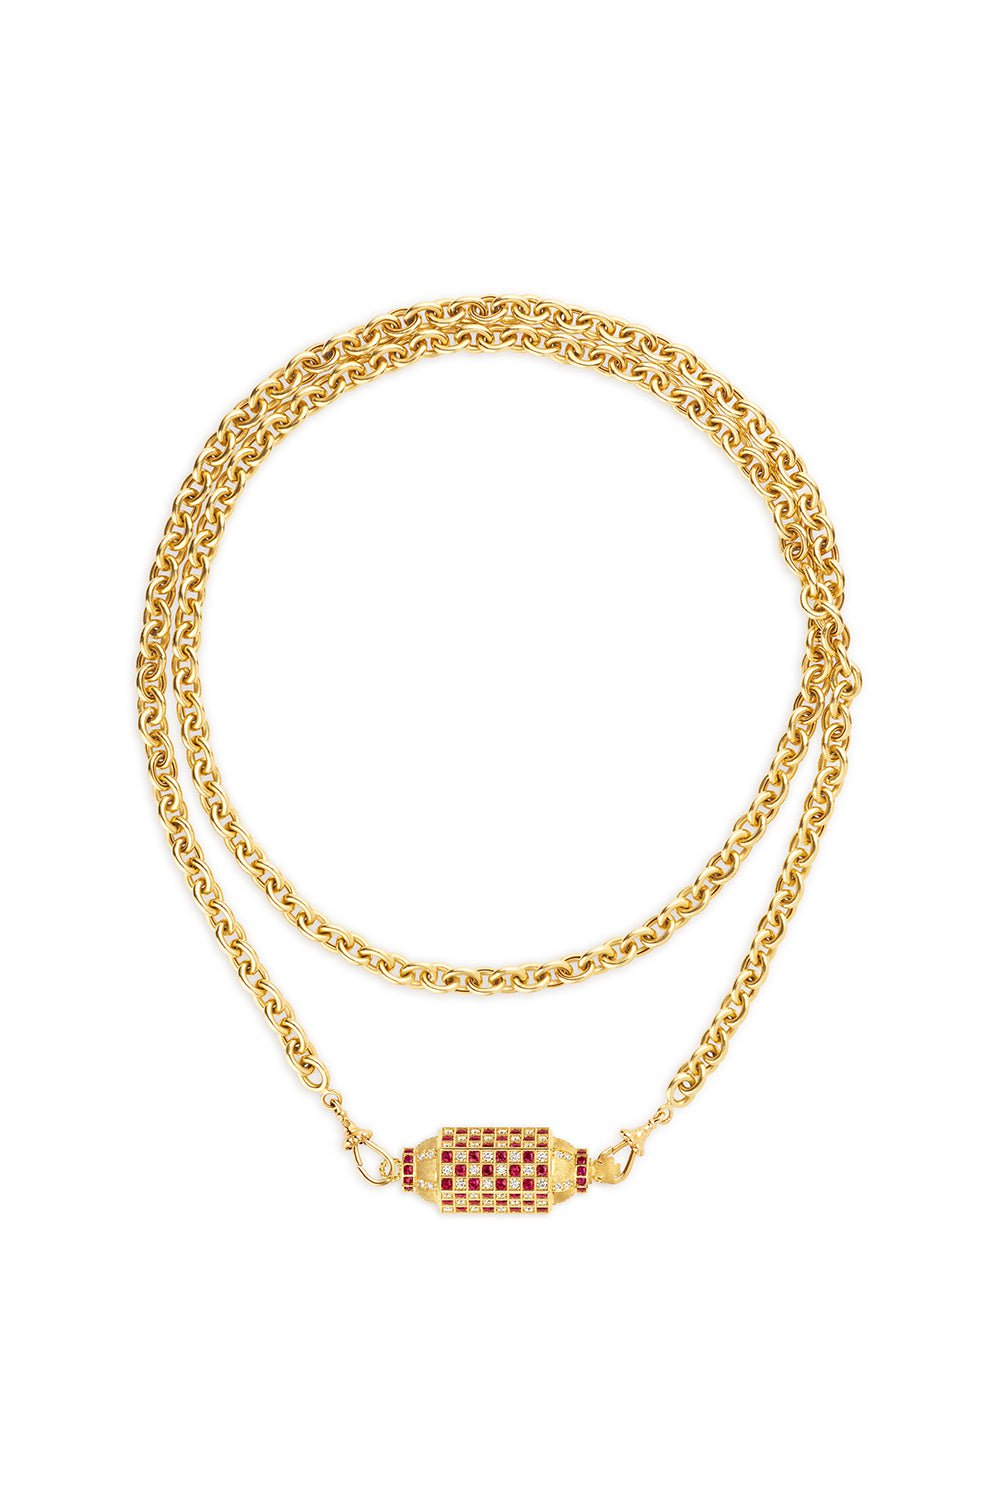 MARIE LICHTENBERG-Check Locket Chain Necklace-YELLOW GOLD